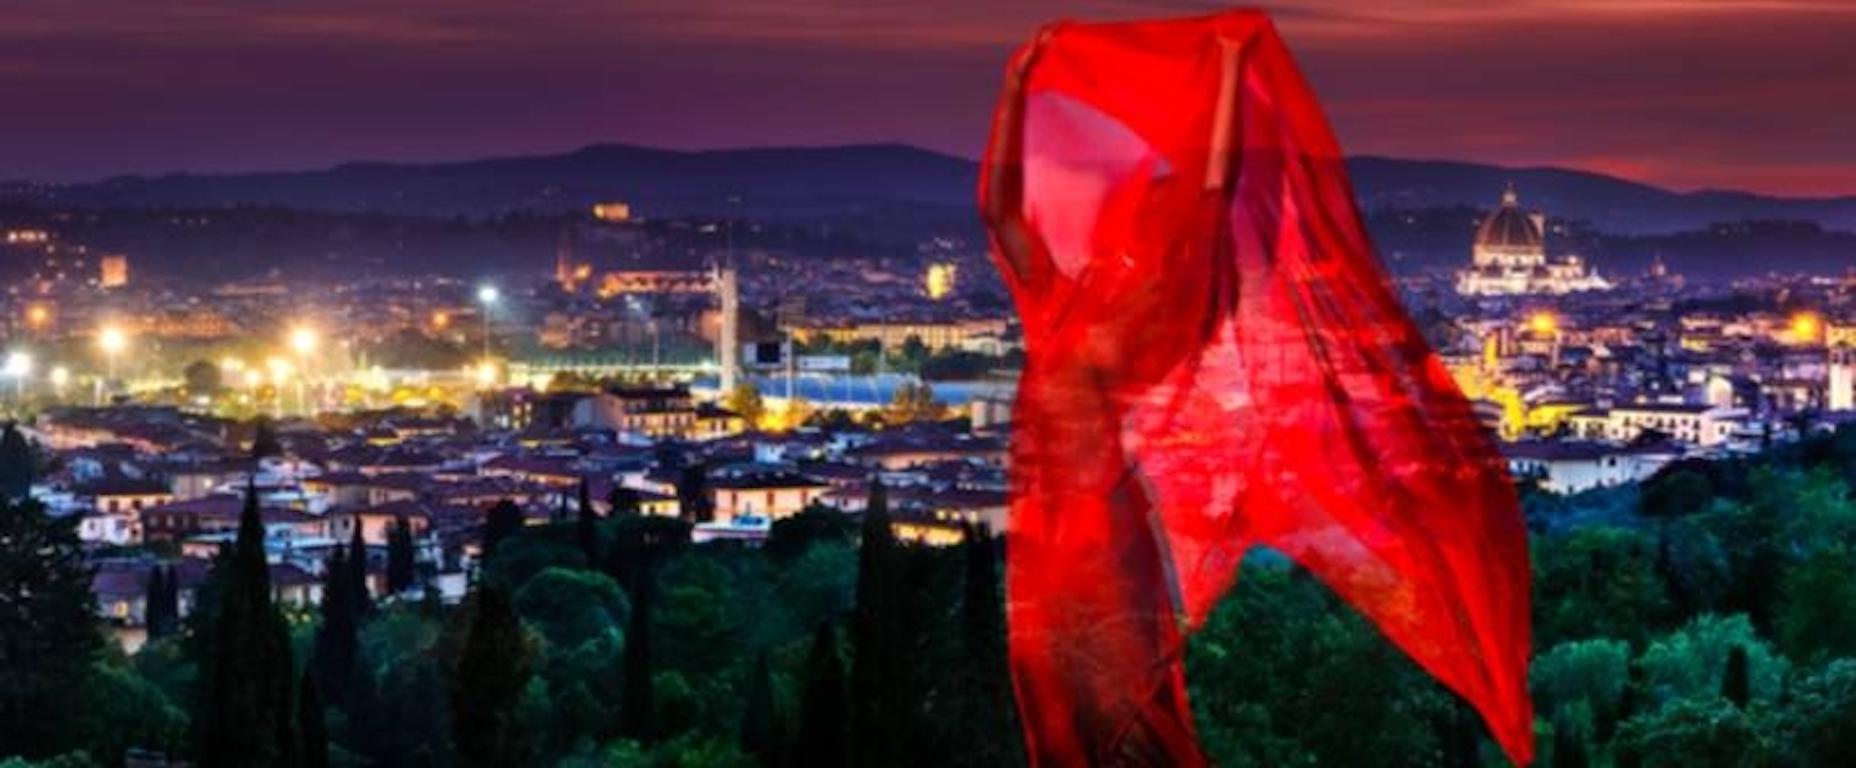 Fantasie in Florenz – Photograph von David Drebin